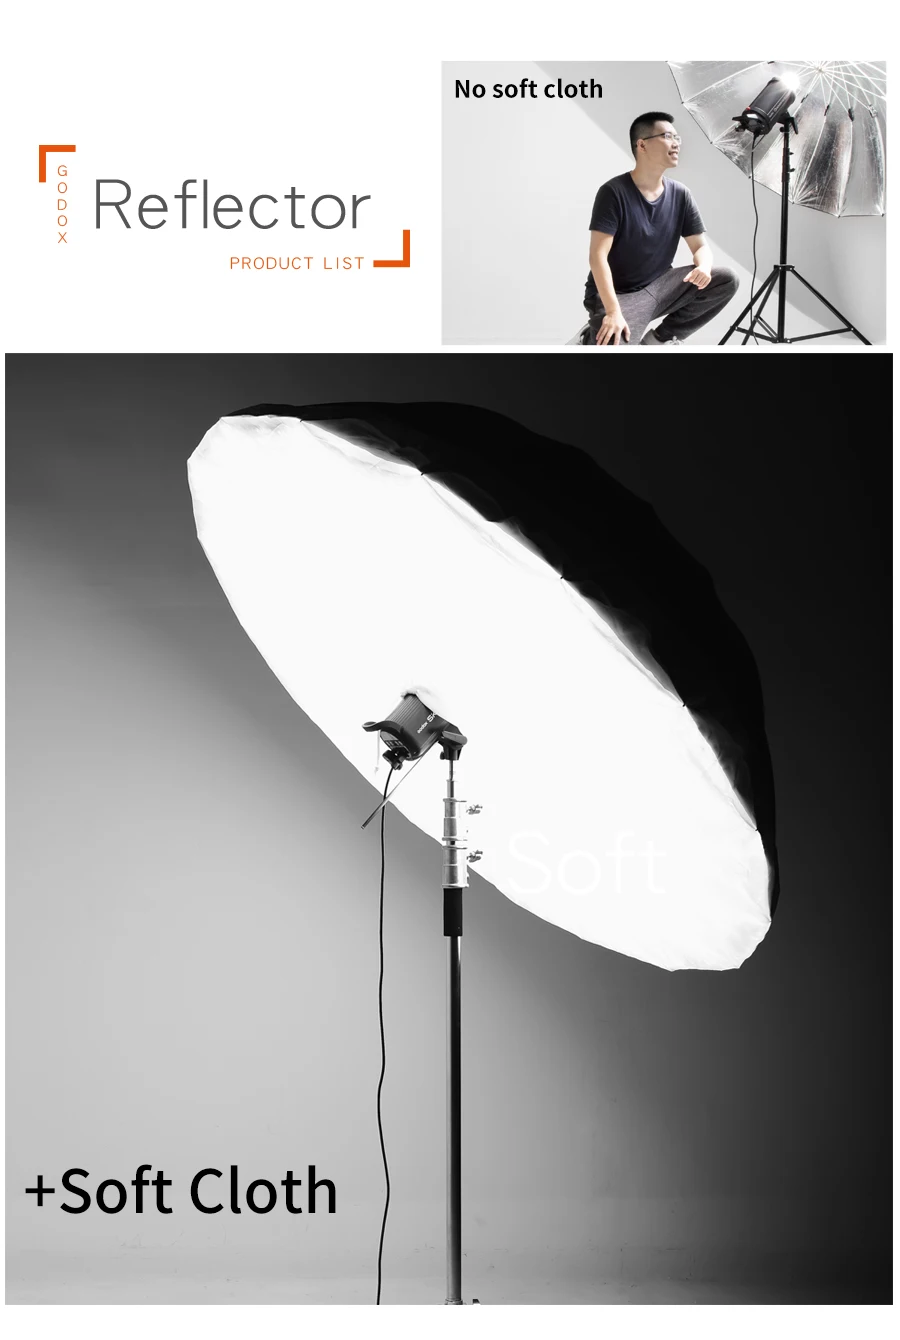 7" 190 см или 70" 178 см рассеиватель-зонт для студийной фотосъемки чехол для зонта Godox Фотография(только крышка рассеивателя